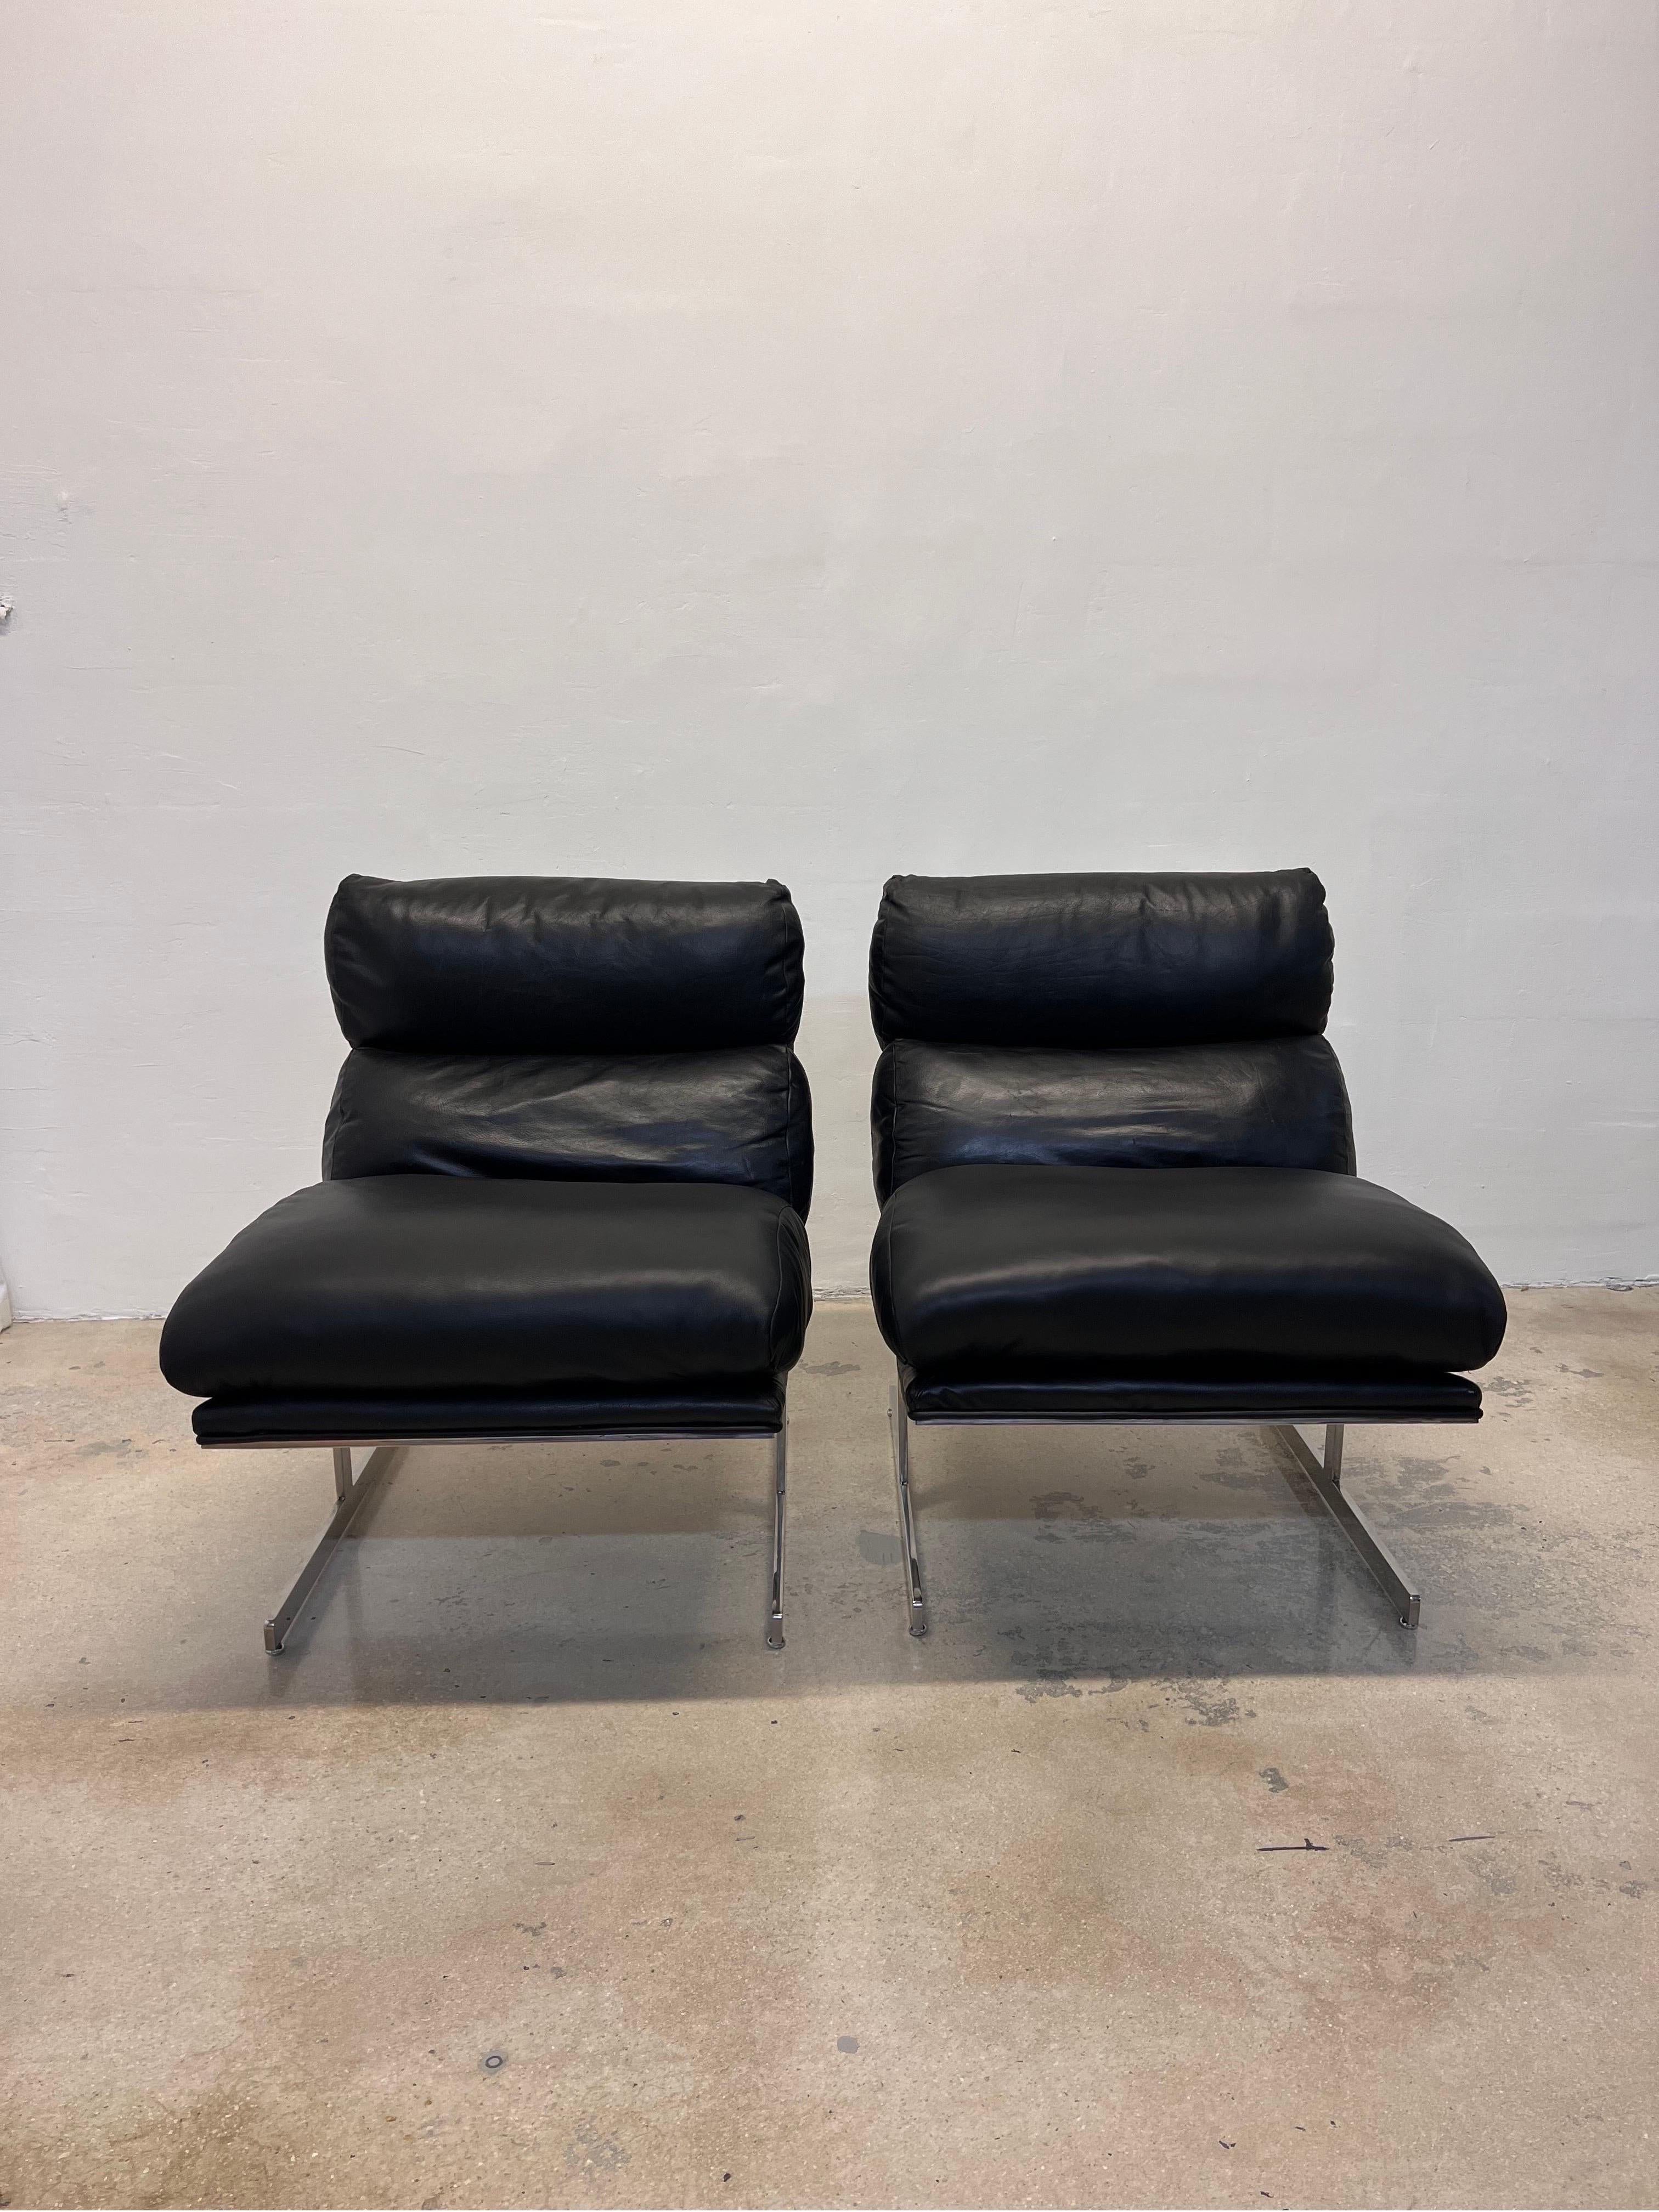 Paire de chaises longues Arc en cuir noir et chrome, conçues par Kipp Stewart et fabriquées par Directional. 

Le dossier en cuir et le cadre recouvert de cuir sont d'origine. Le siège en cuir a été retapissé avec du nouveau cuir et de la